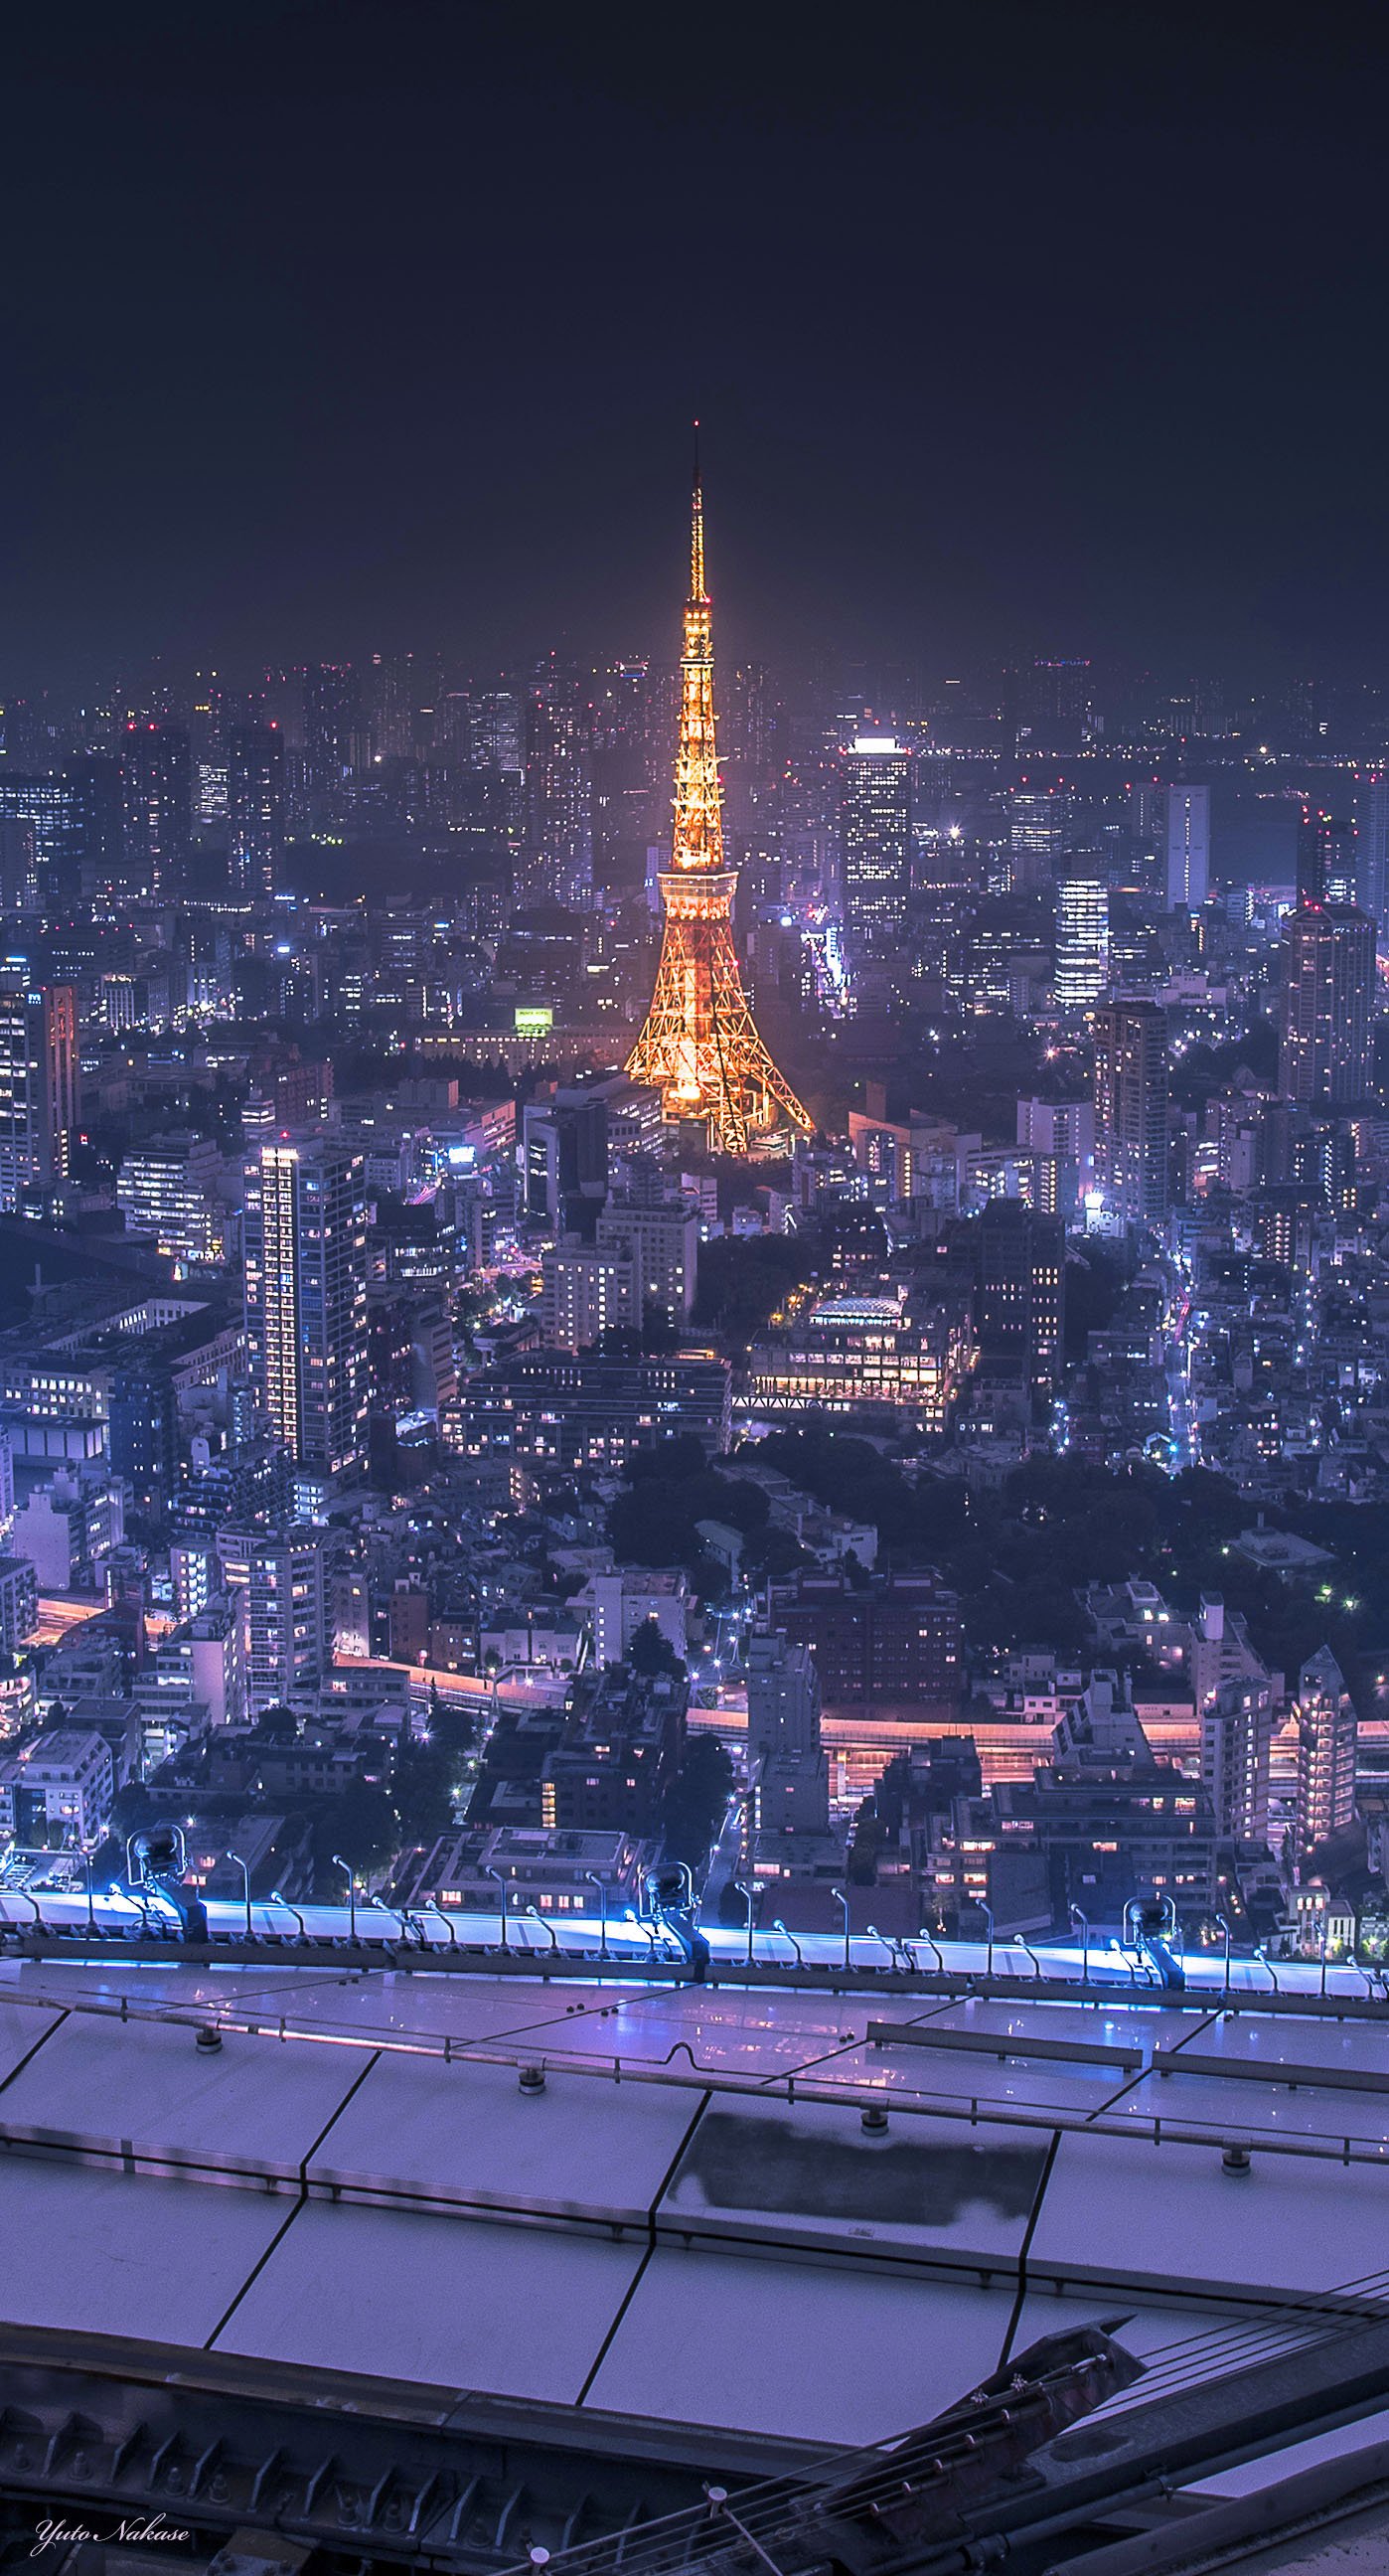 中瀬雄登 写真教室やってます 東京タワー大好きです 六本木ヒルズからと晴海ふ頭からの夜景です スマホの壁紙として使用できるサイズです Iphone壁紙 ニッポンを撮る 東京タワー 六本木ヒルズ 晴海ふ頭 夜景 T Co